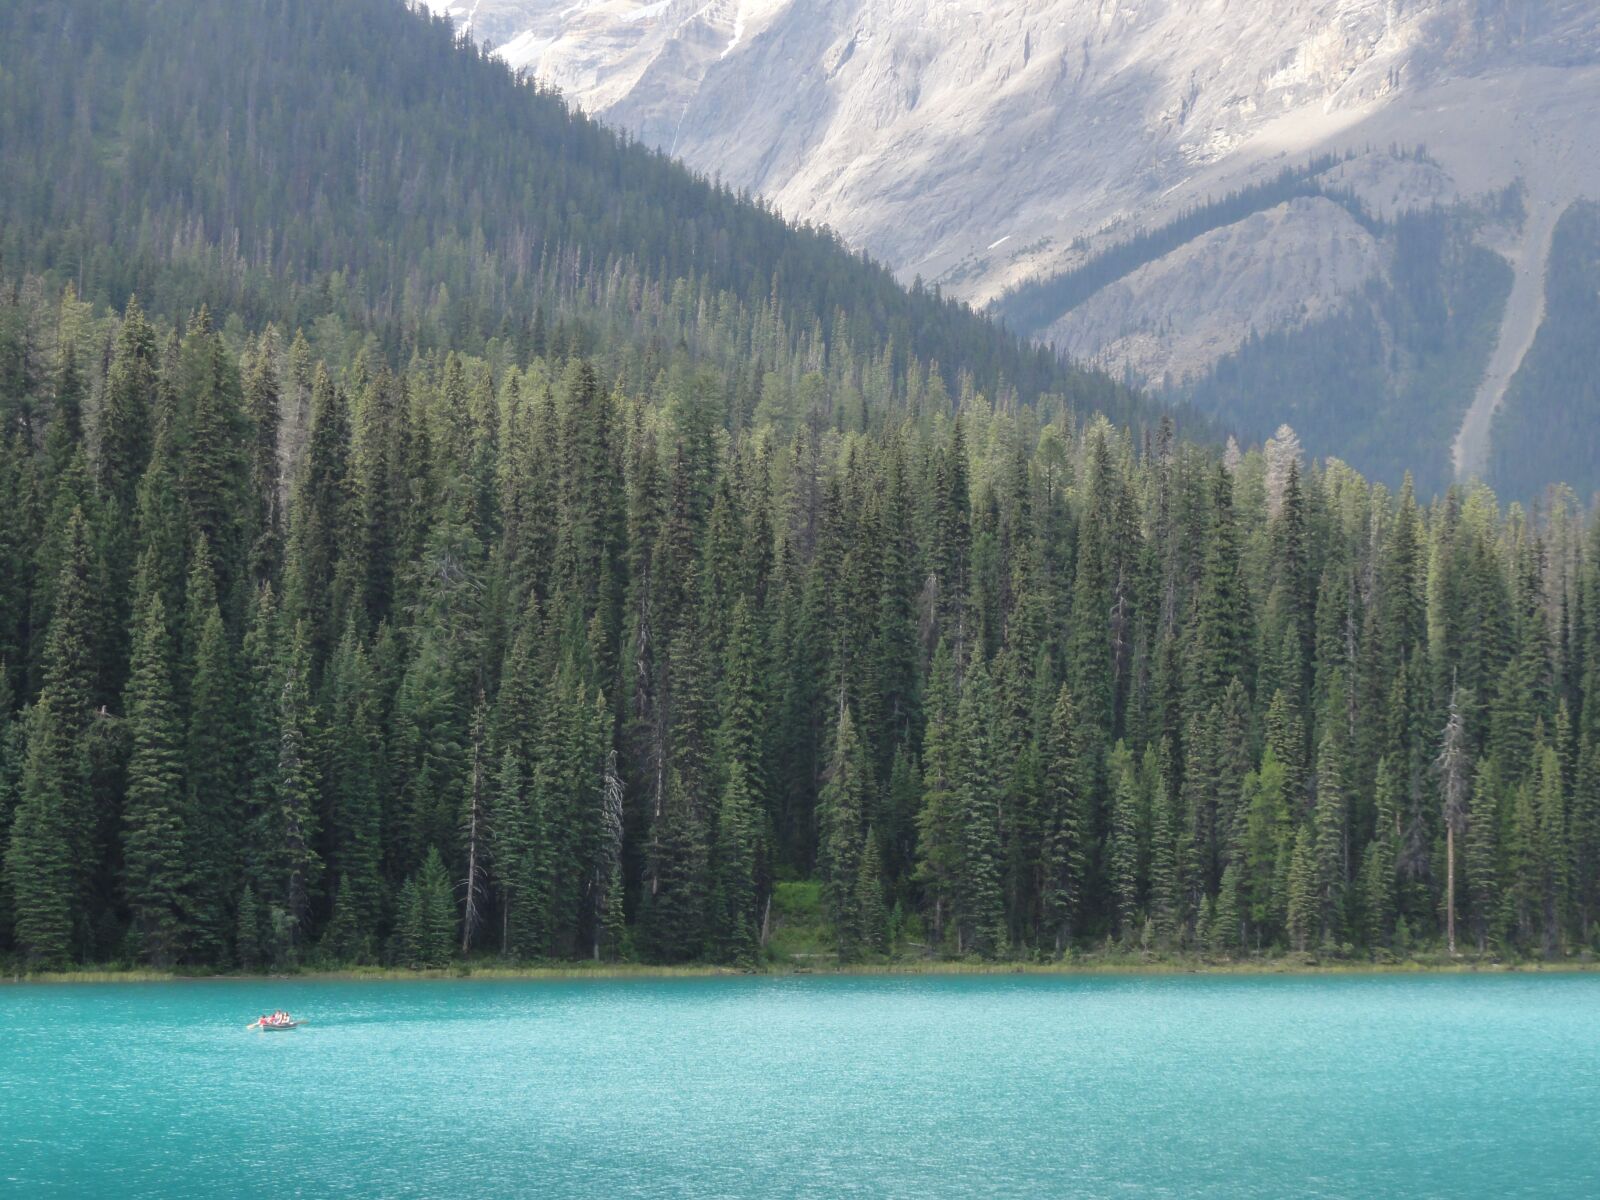 Sony DSC-HX5V sample photo. Lake, emerald, landscape photography